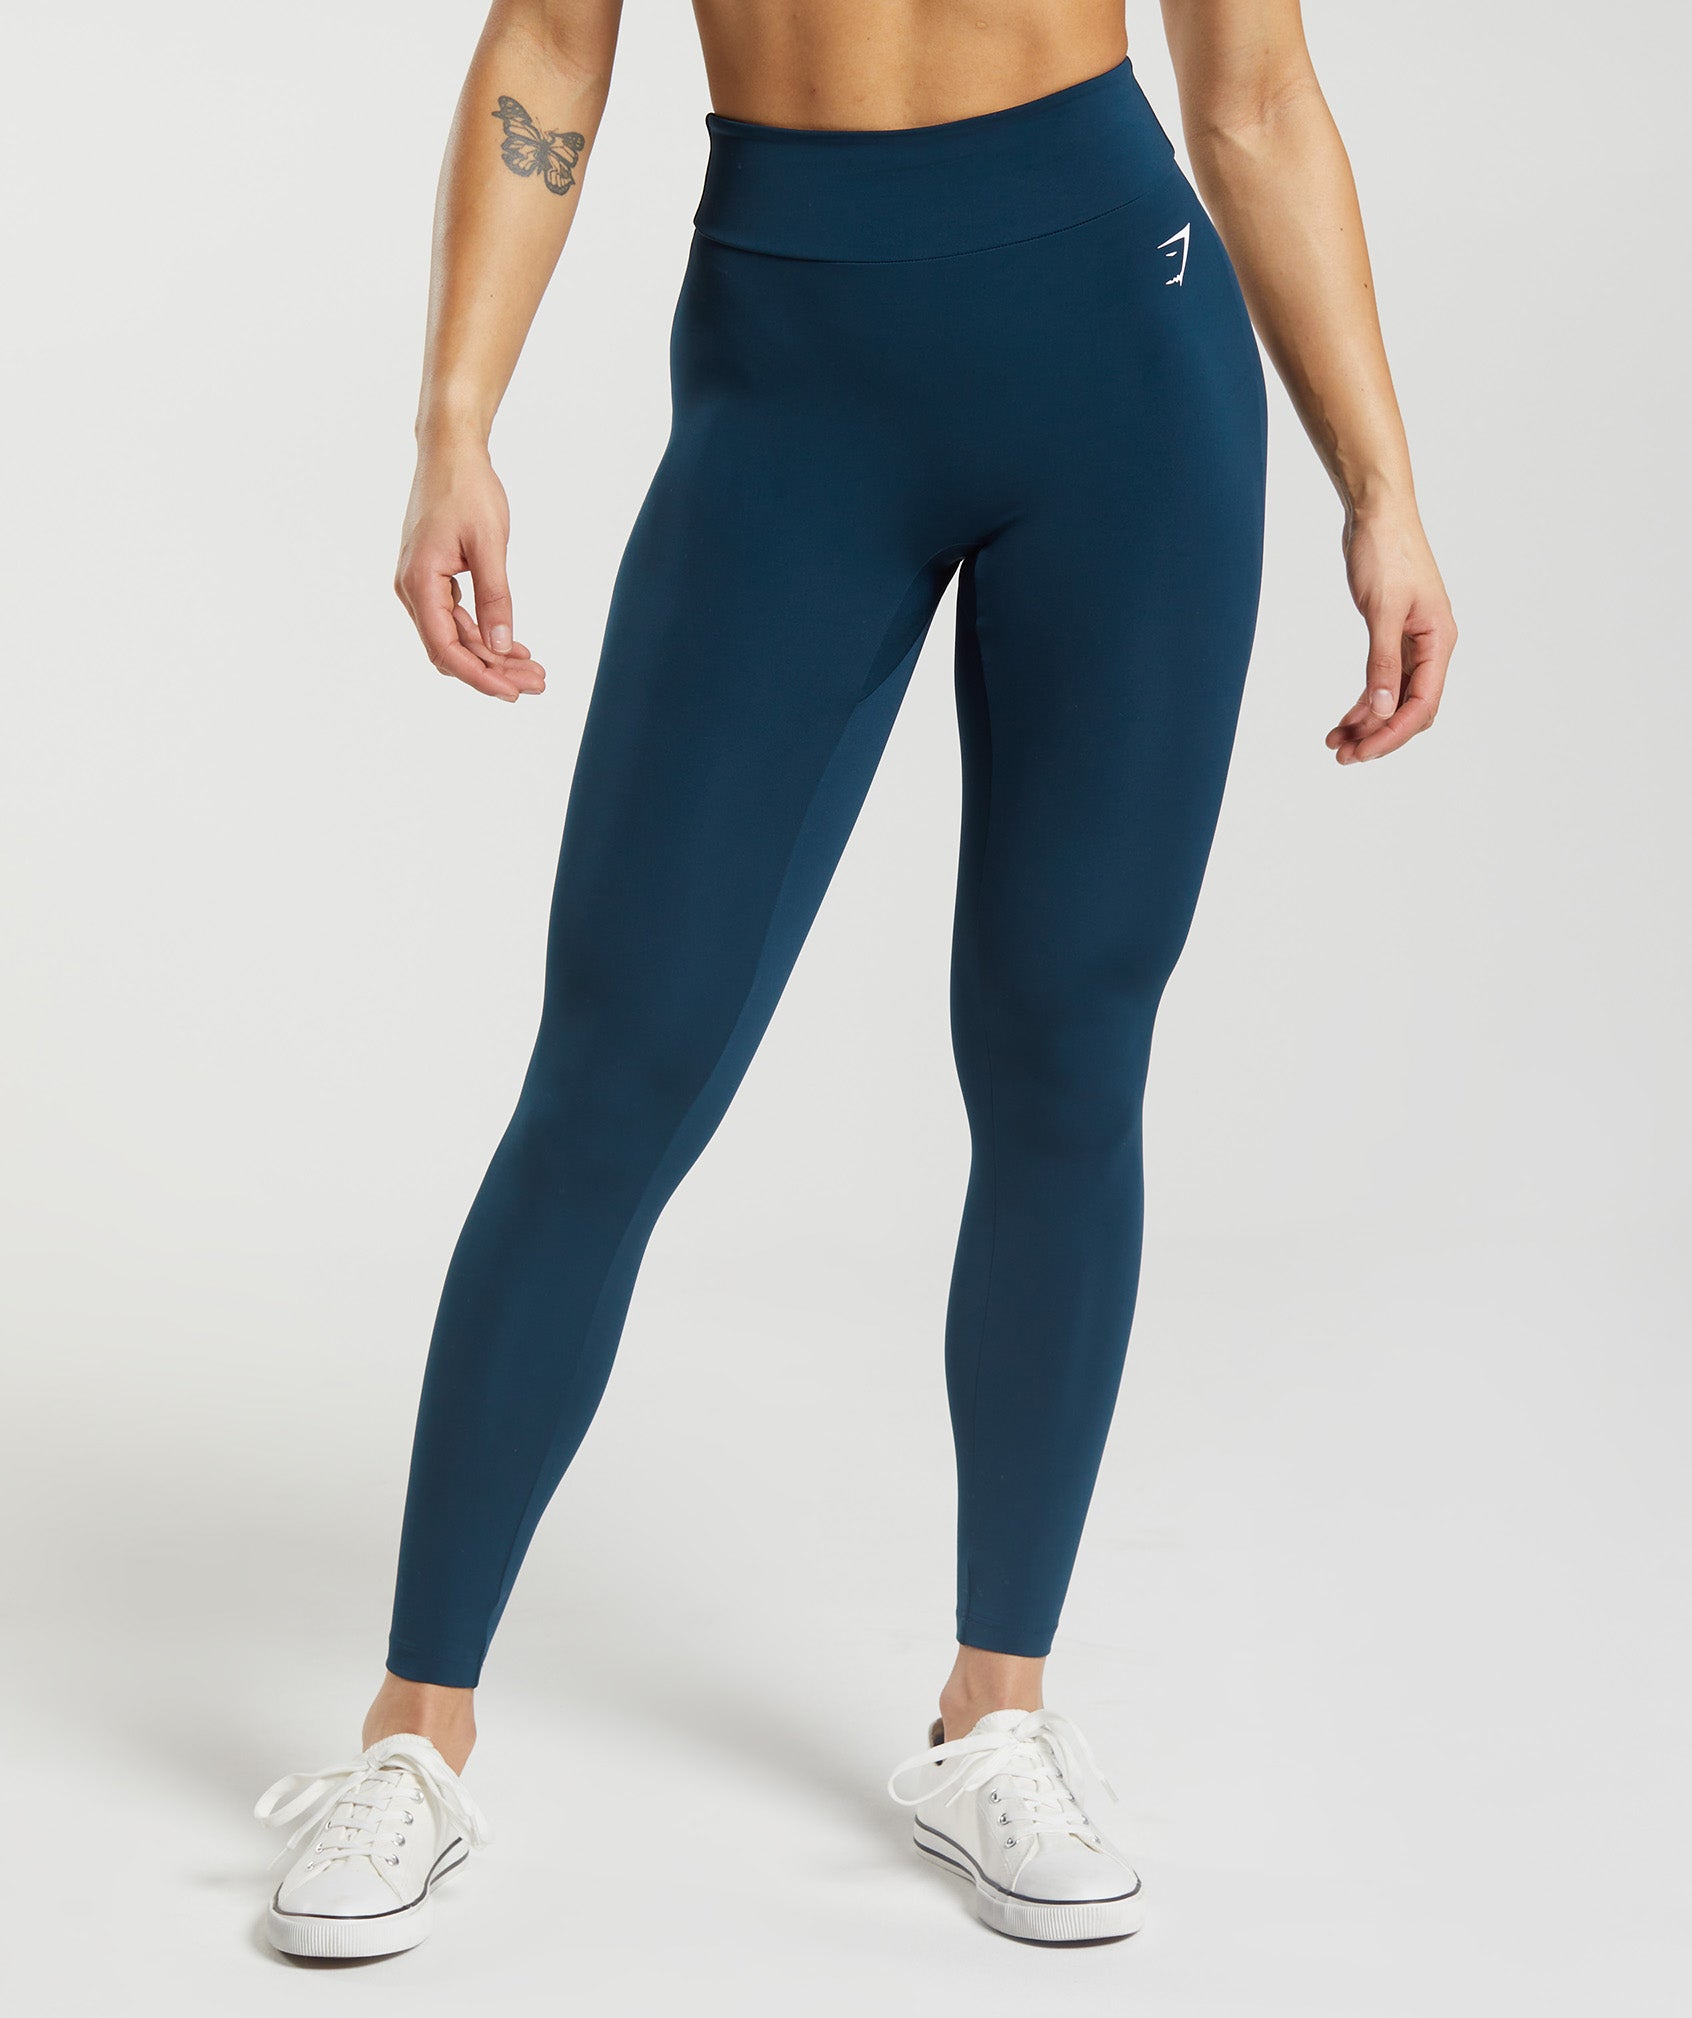 Gymshark Energy Seamless Leggings Blue Size Small  Seamless leggings,  Compression leggings, Gym pants